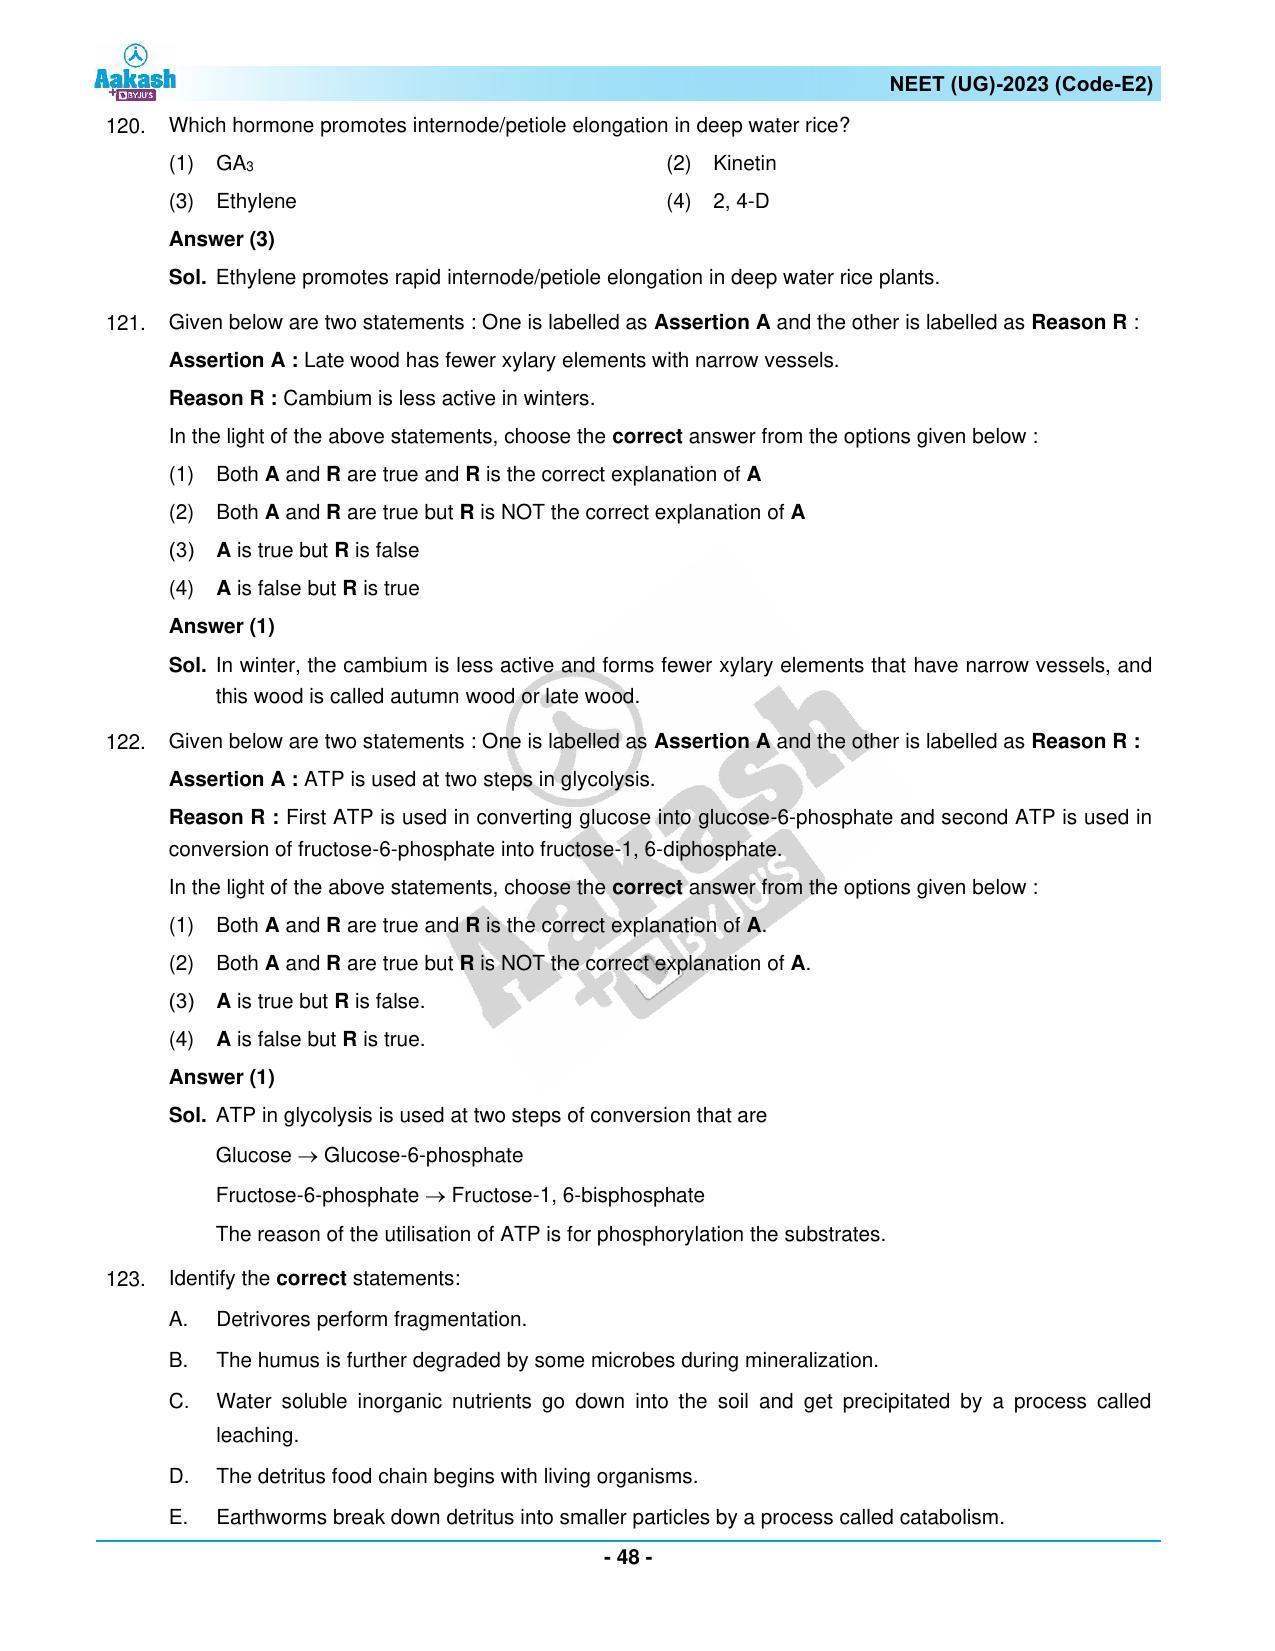 NEET 2023 Question Paper E2 - Page 48